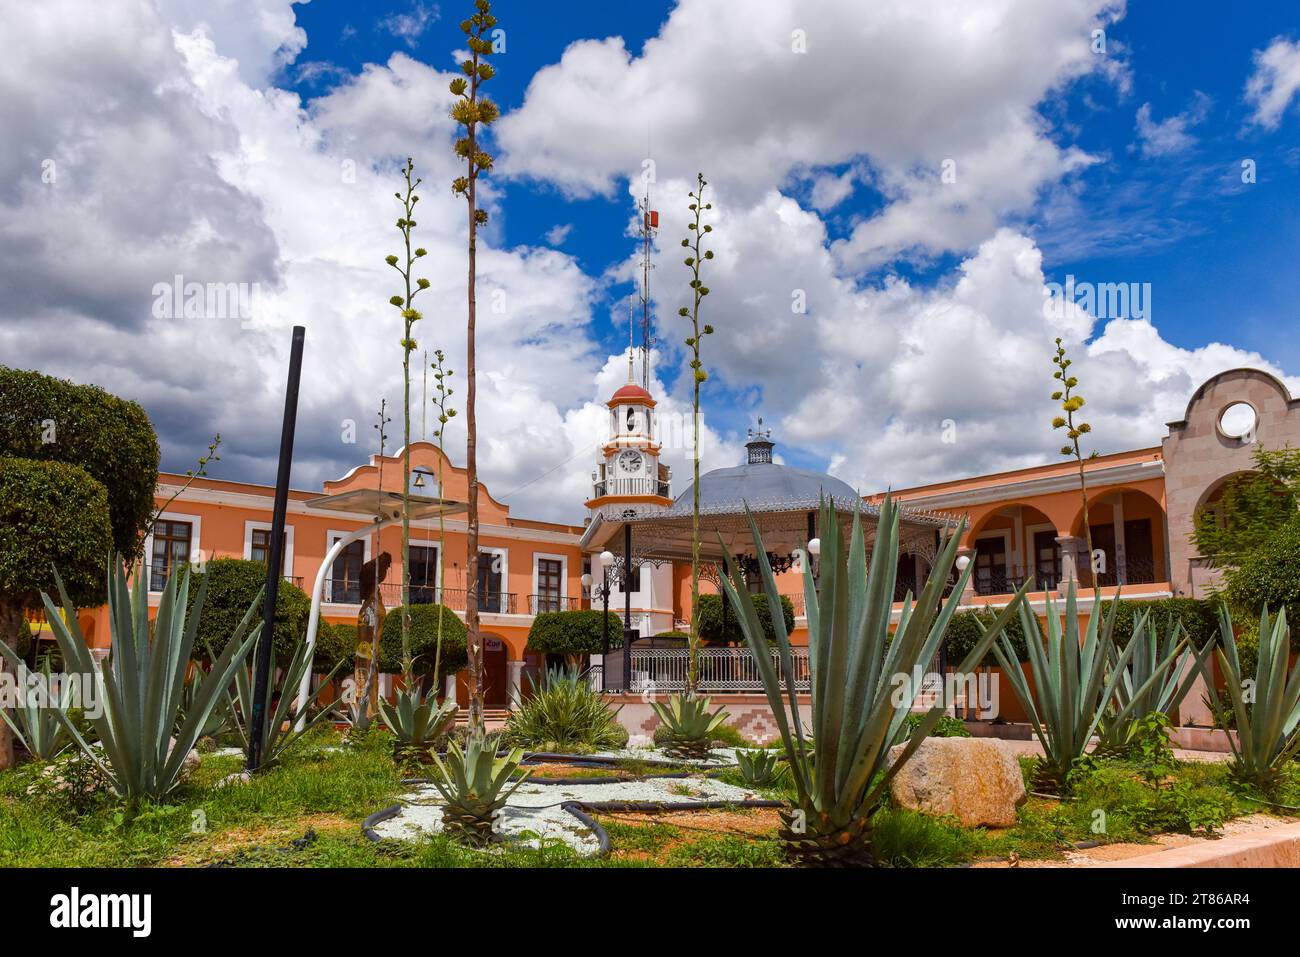 Town of Mitla, Oaxaca state, Mexico Stock Photo